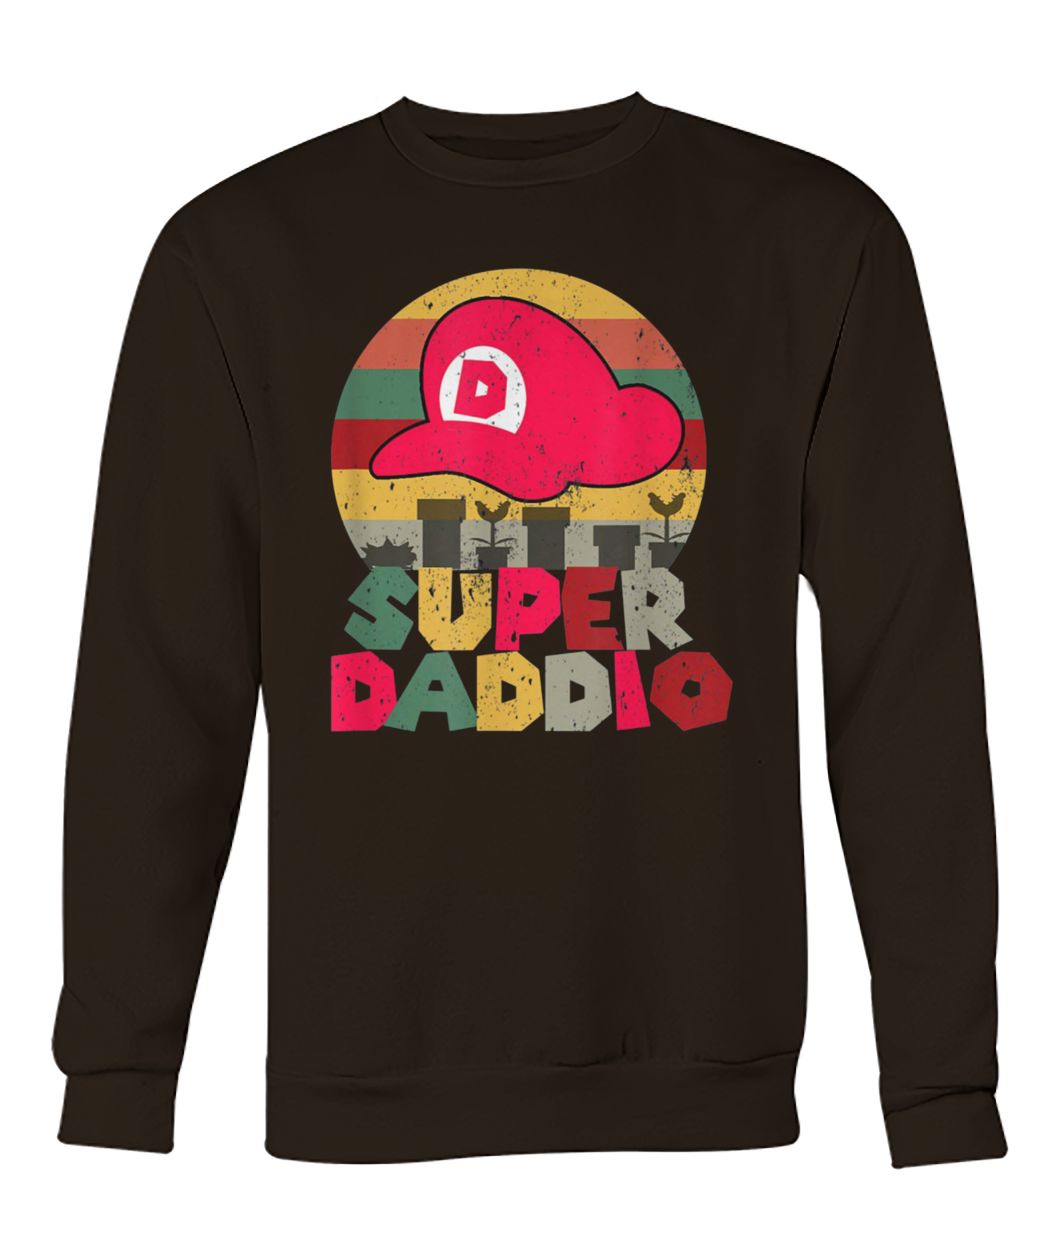 Vintage super daddio crew neck sweatshirt